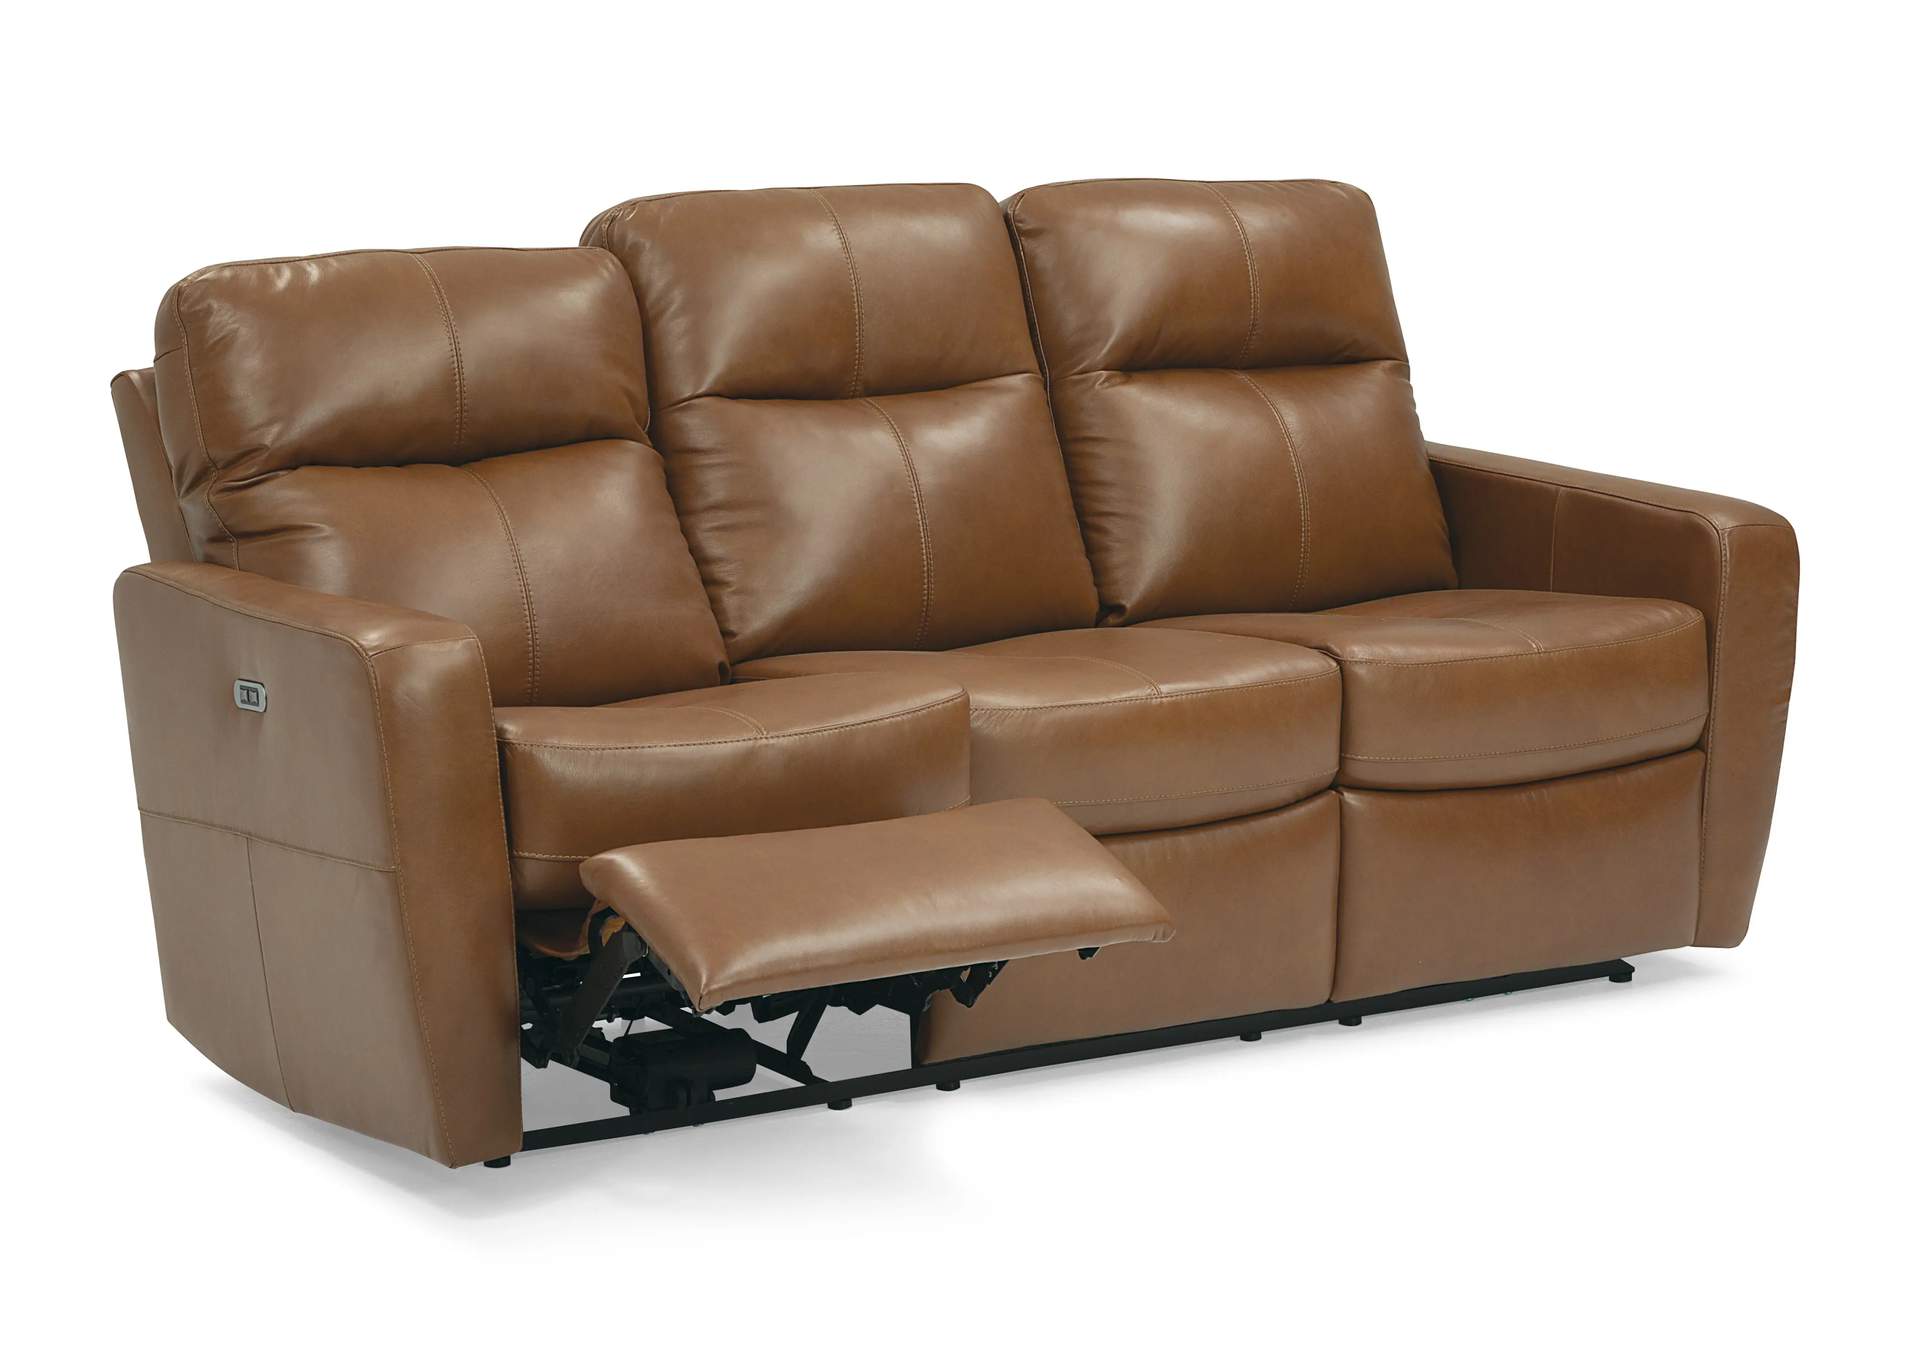 Cairo Sofa Power Recliner w/ Power Headrest,Palliser Furniture